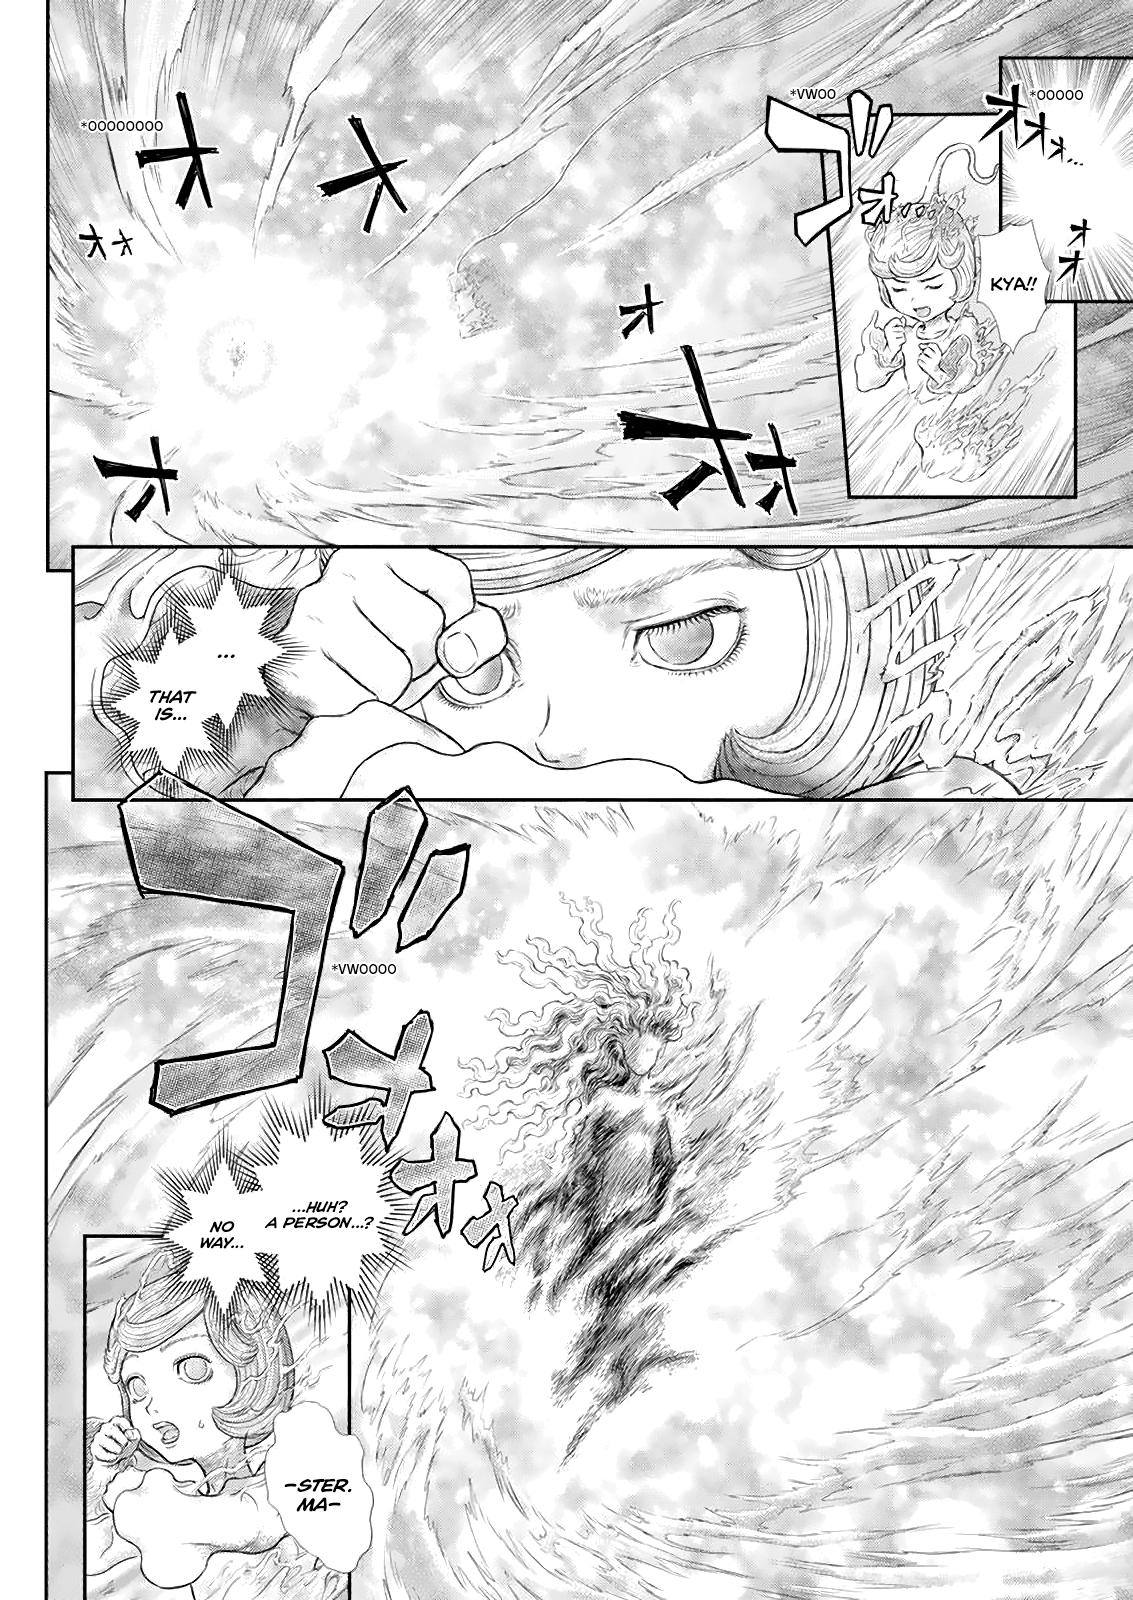 Berserk Manga Chapter 366 image 08